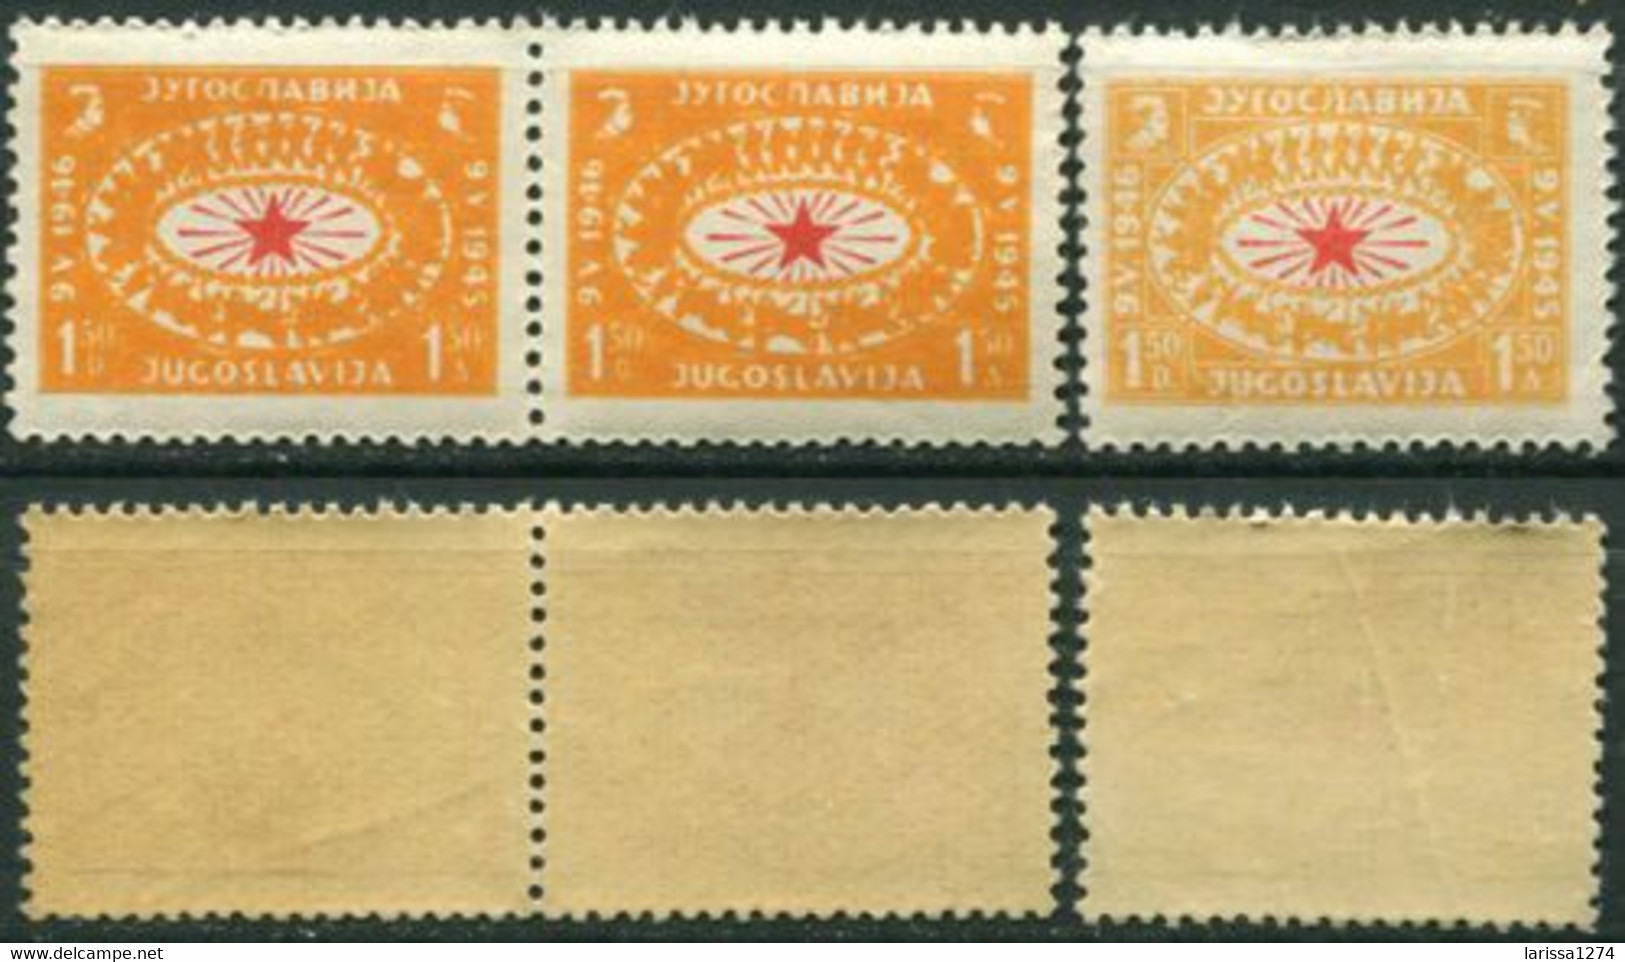 534.Yugoslavia 1946 Victory Day ERROR In Colour First 2 Stamps MNH Michel 494 - Non Dentellati, Prove E Varietà